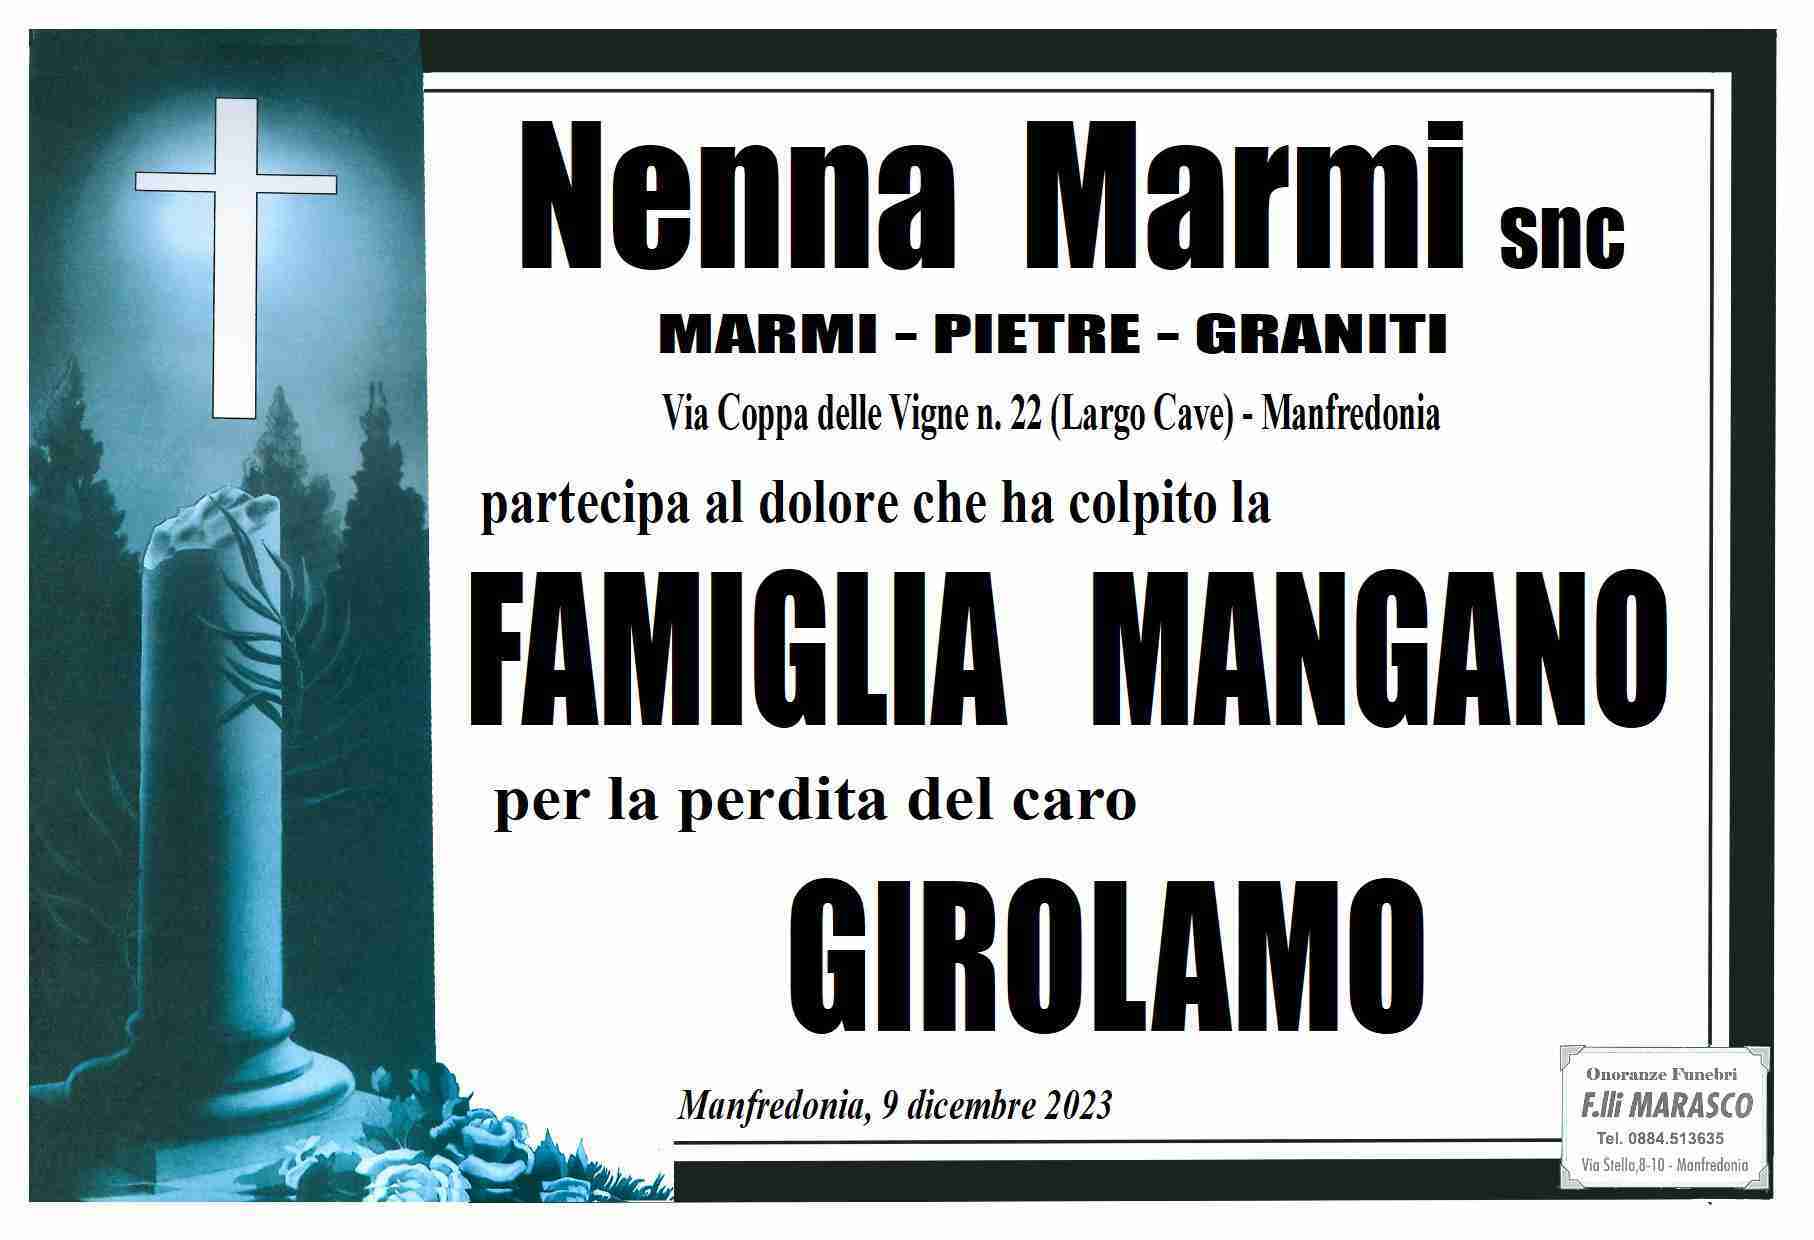 Girolamo Mangano